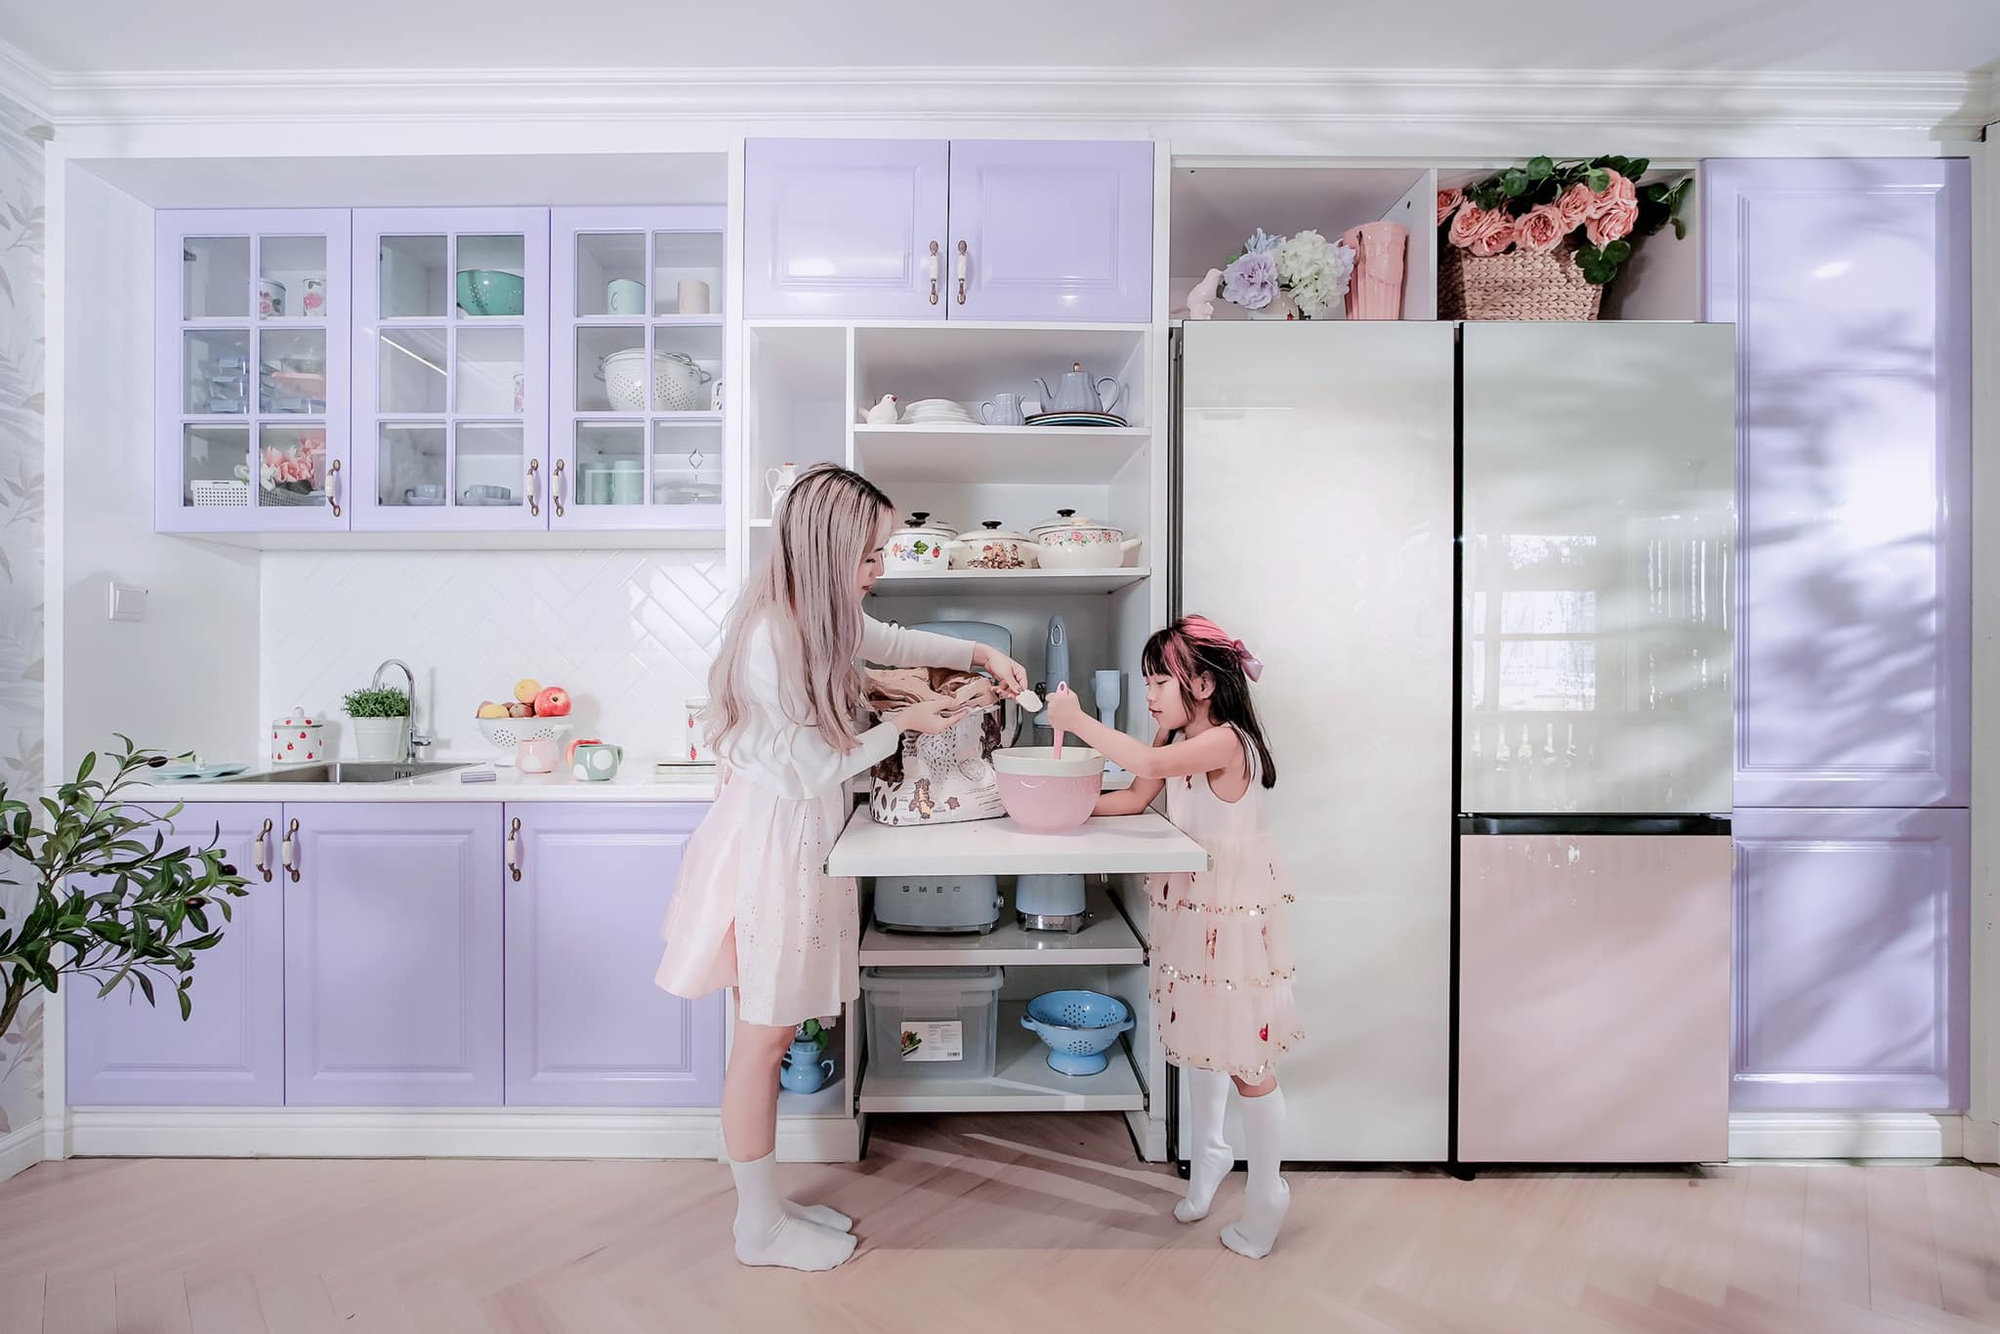 Góc bếp màu tím pastel trong ngôi nhà xanh lơ đẹp thơ mộng với đủ các thiết bị hiện đại của mẹ 3 con ở TP. HCM - Ảnh 4.